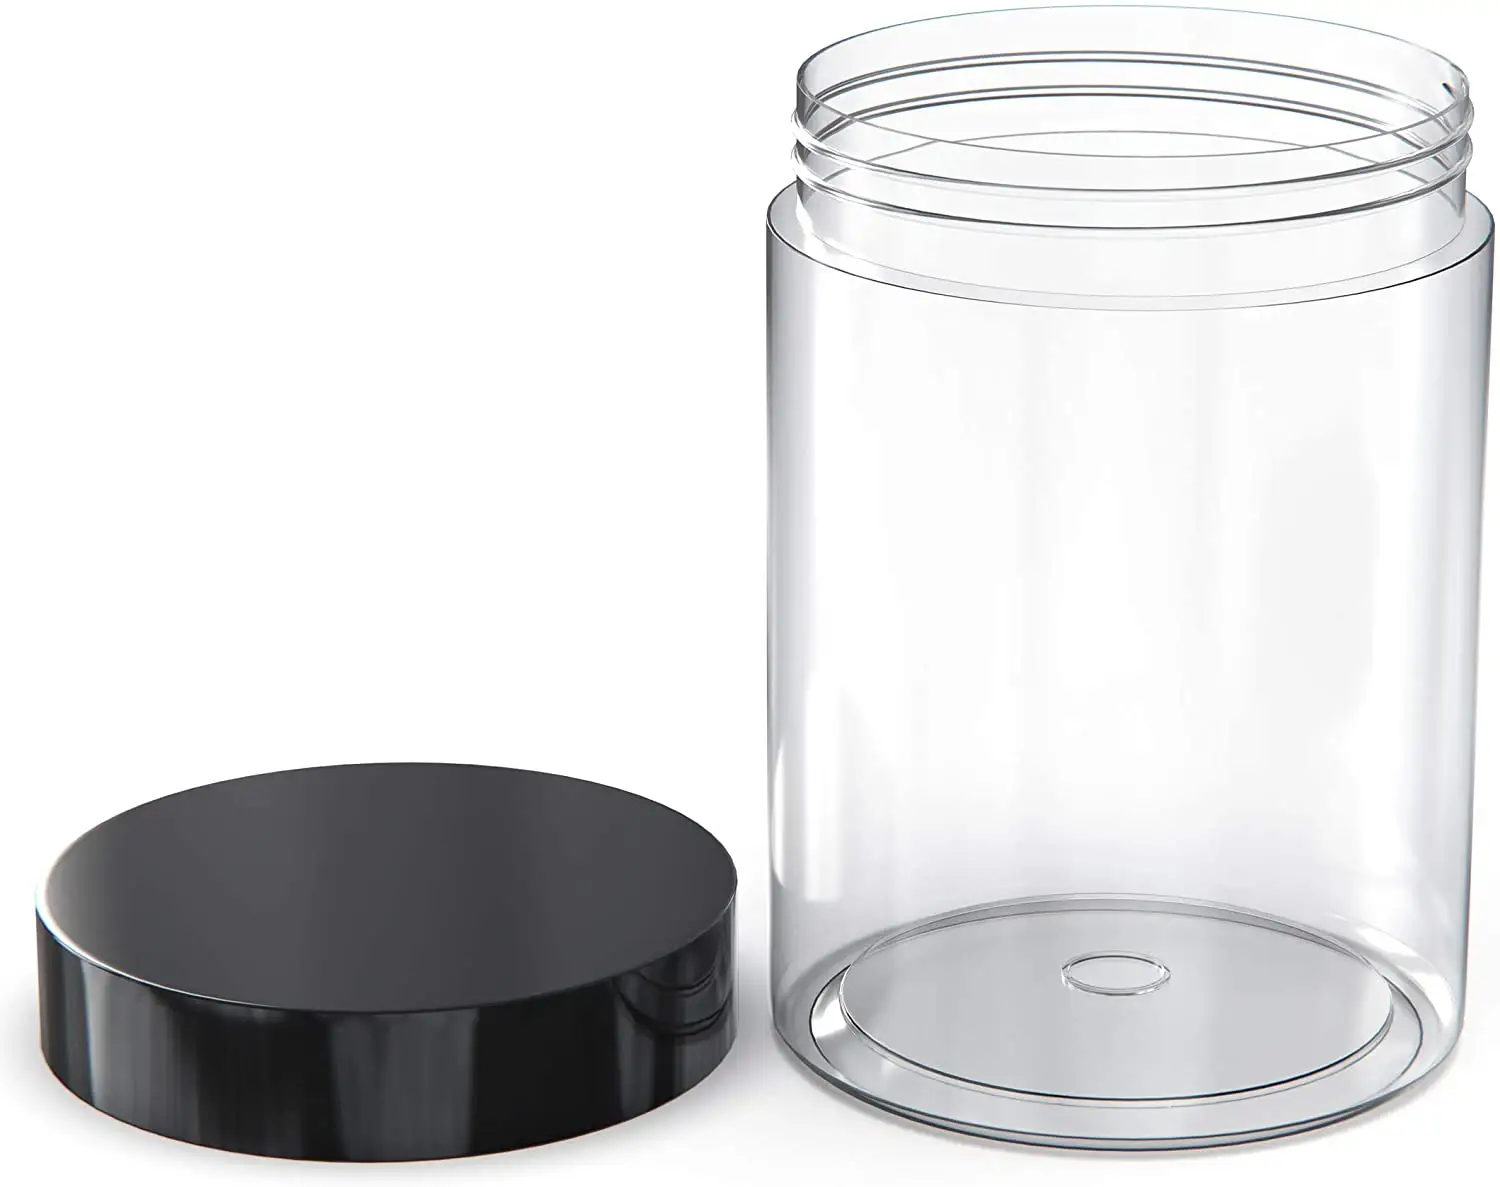 Şeffaf yuvarlak geniş ağızlı plastik kavanozlar 8oz konteyner depolama için kapaklı kozmetik sıvı ve katı ürünler